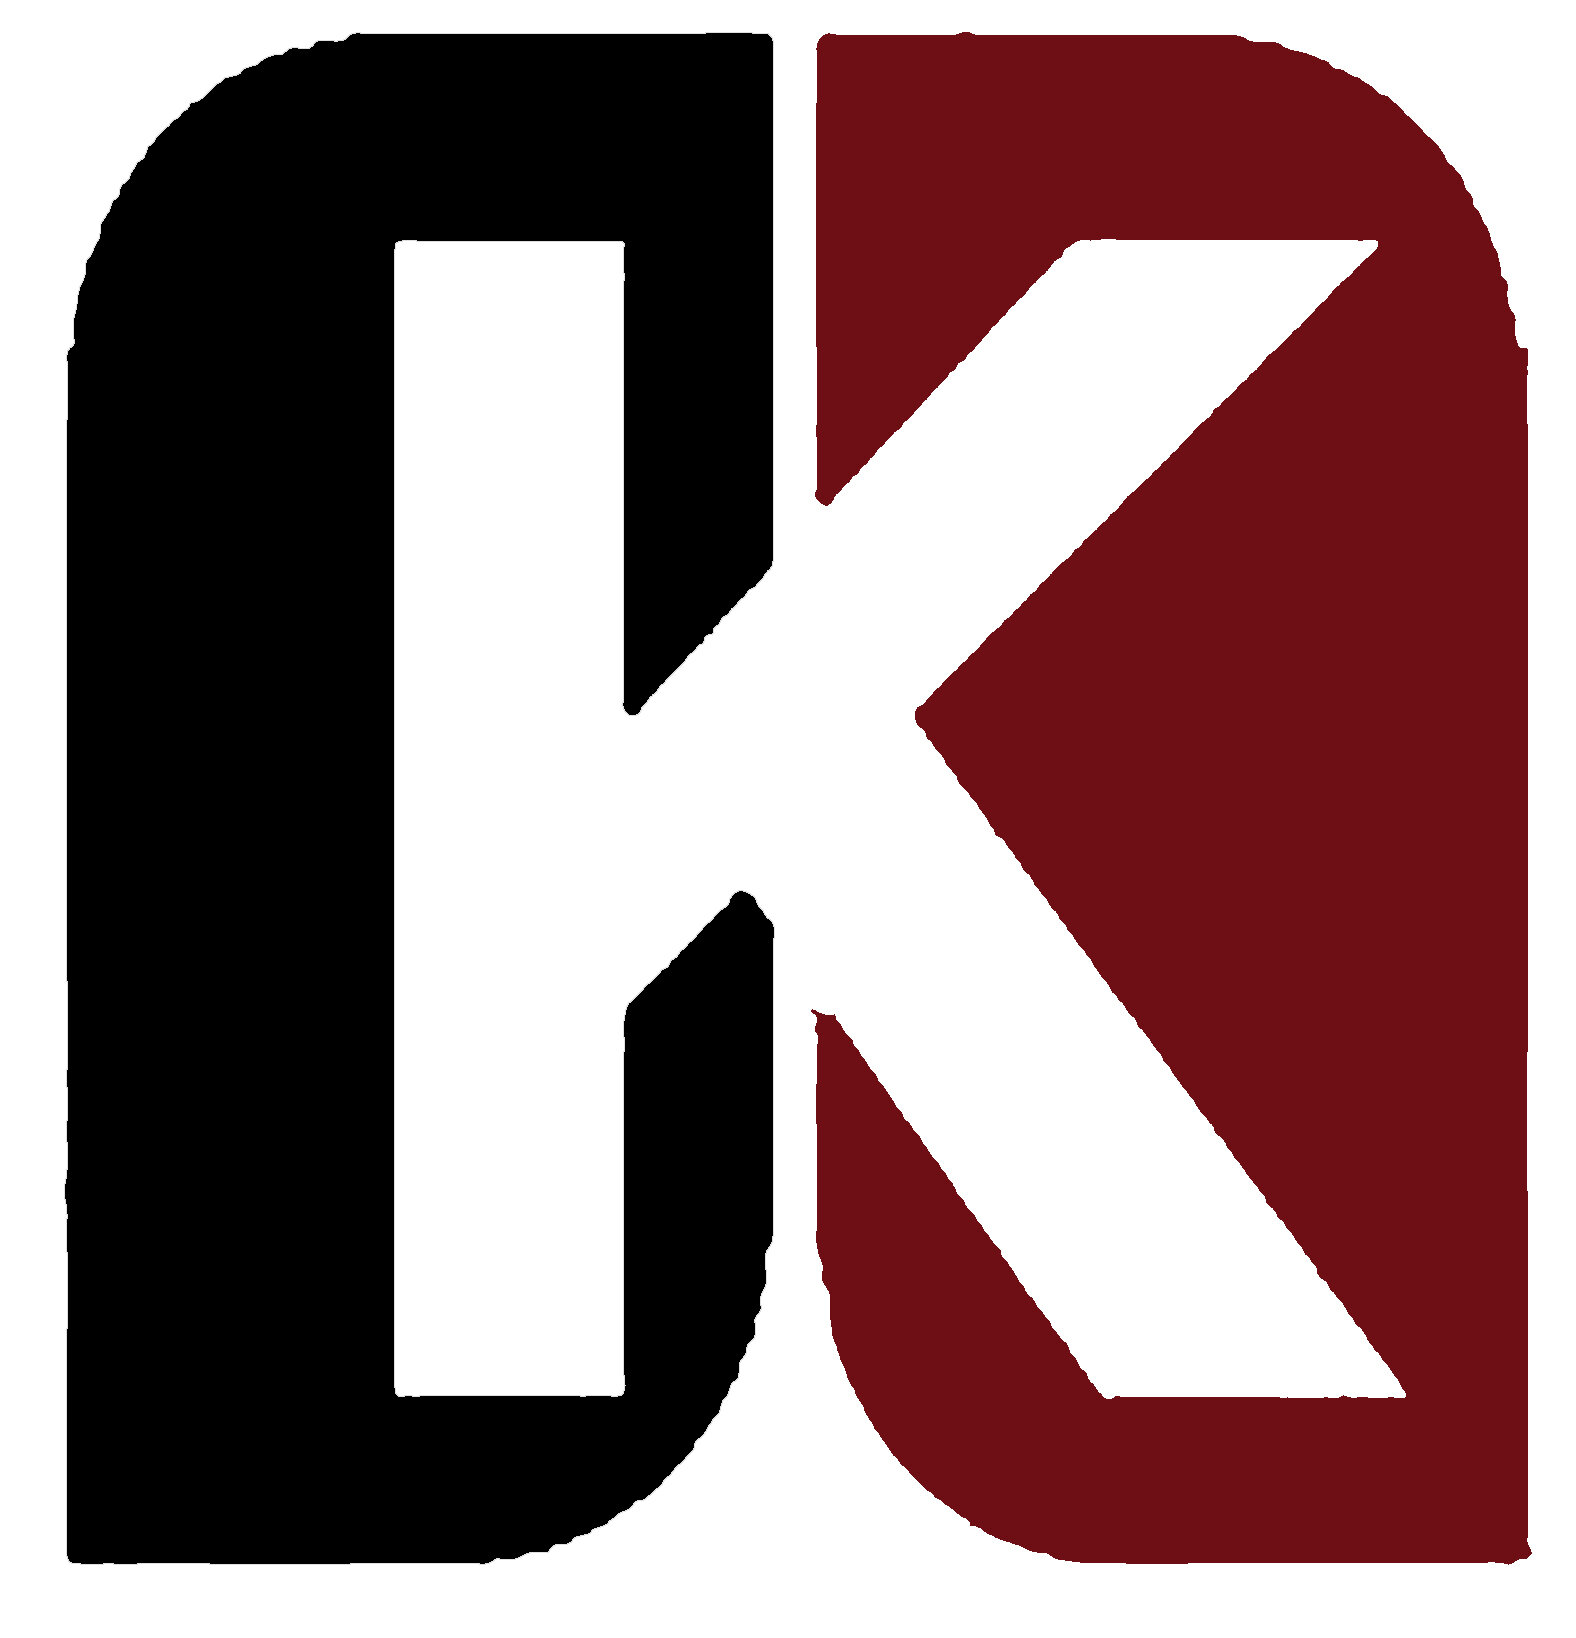 kidder-construction-logo.jpg